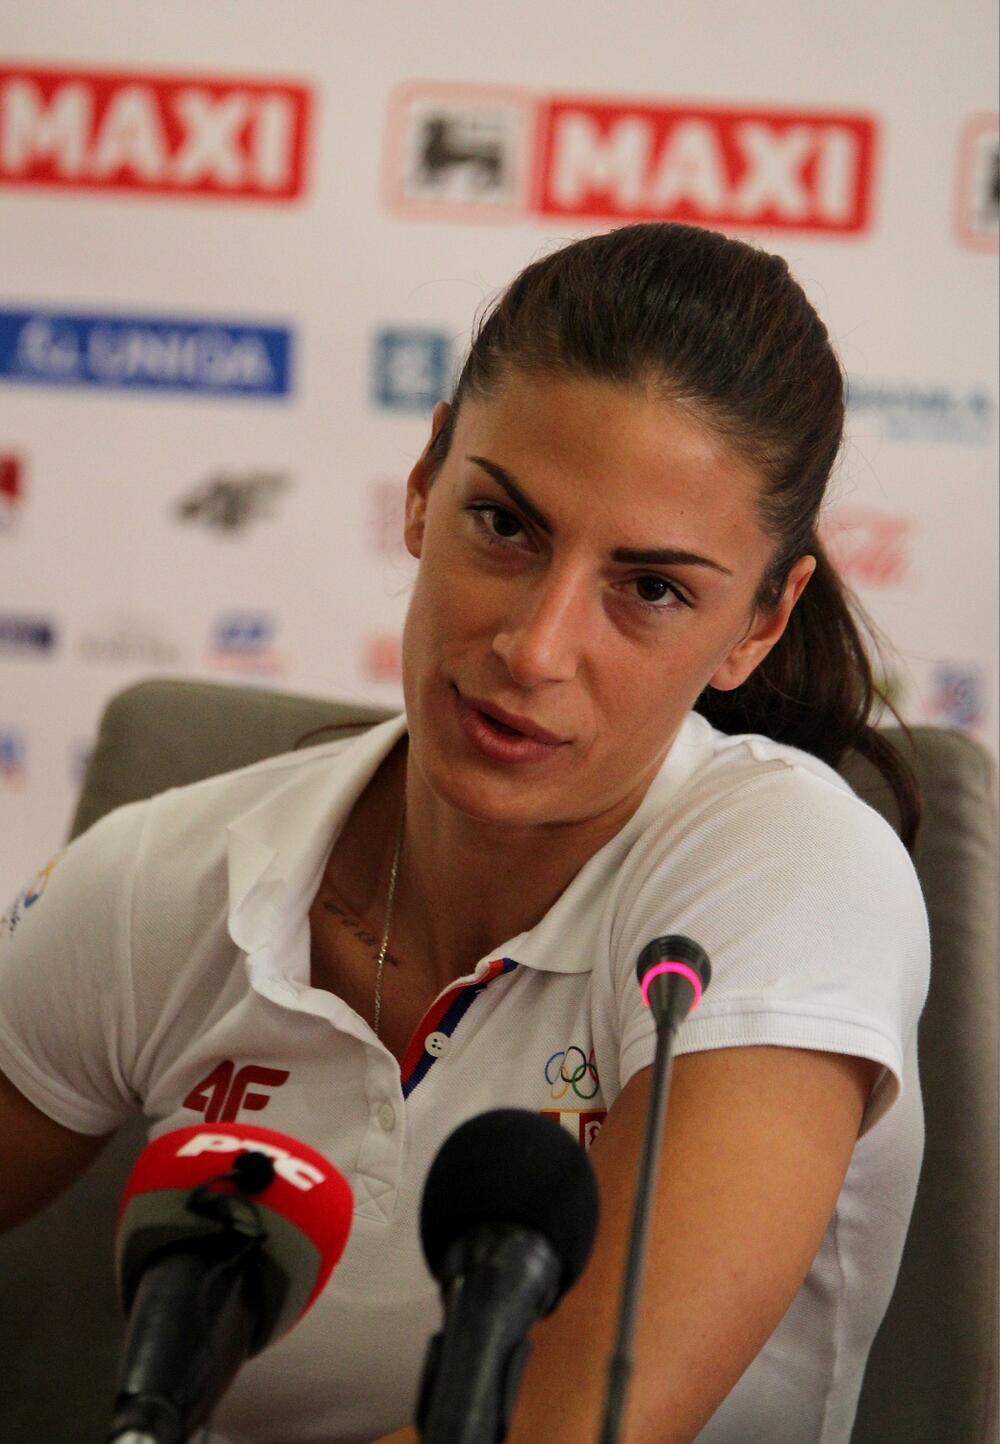 <p>Jedna od najuspešnijih srpskih sportistkinja juče je rekla "da" na jednom bajkovitom ranču u okolini Beograda</p>